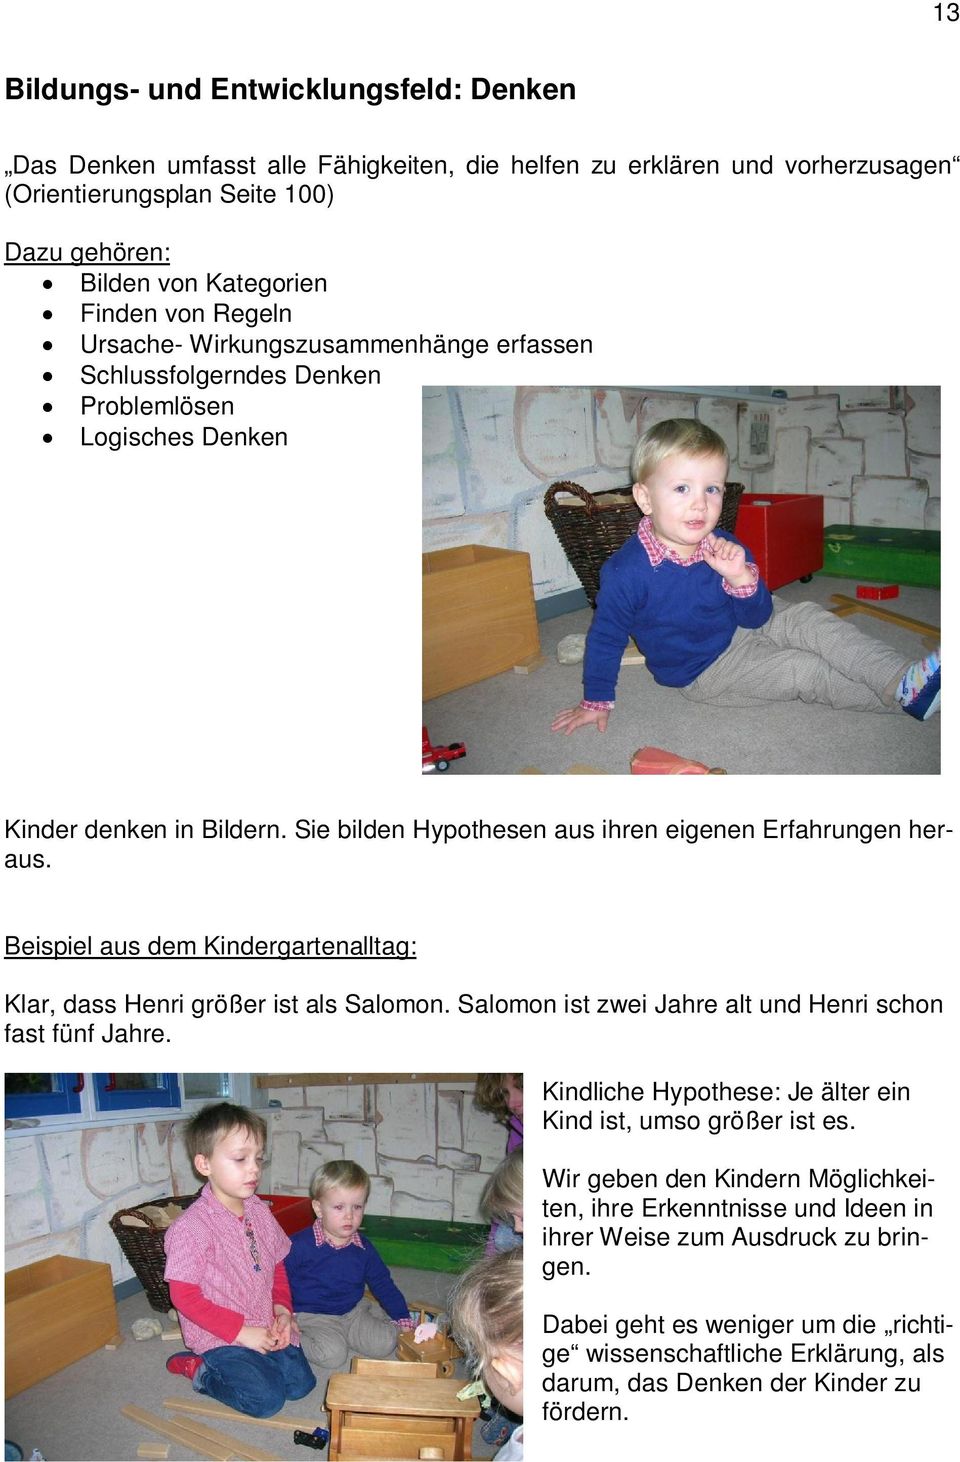 Beispiel aus dem Kindergartenalltag: Klar, dass Henri größer ist als Salomon. Salomon ist zwei Jahre alt und Henri schon fast fünf Jahre.